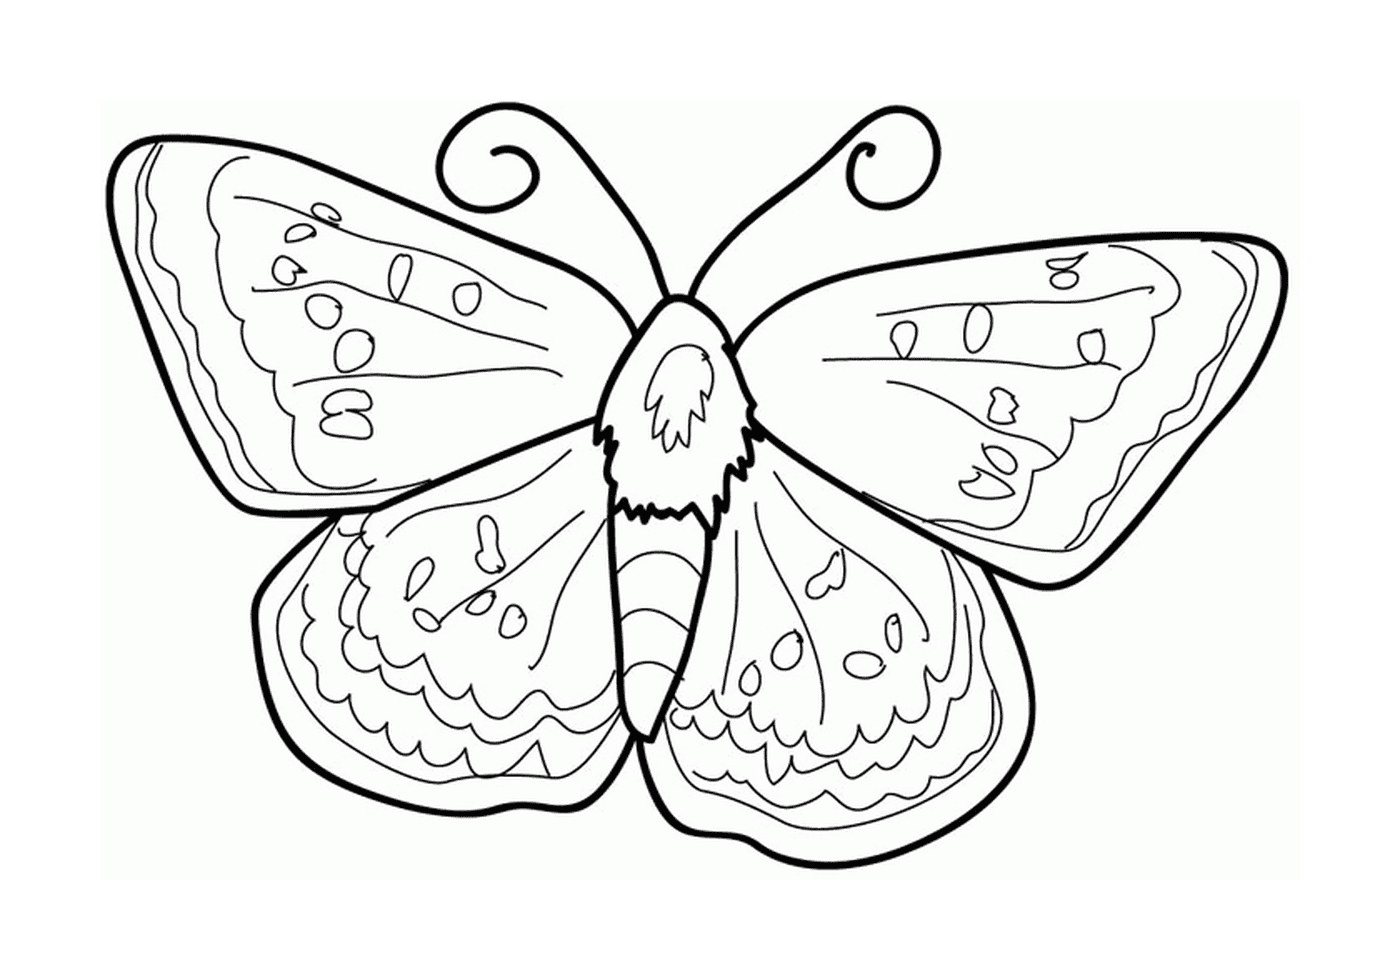  Lecker gelegter Hintern Schmetterling 